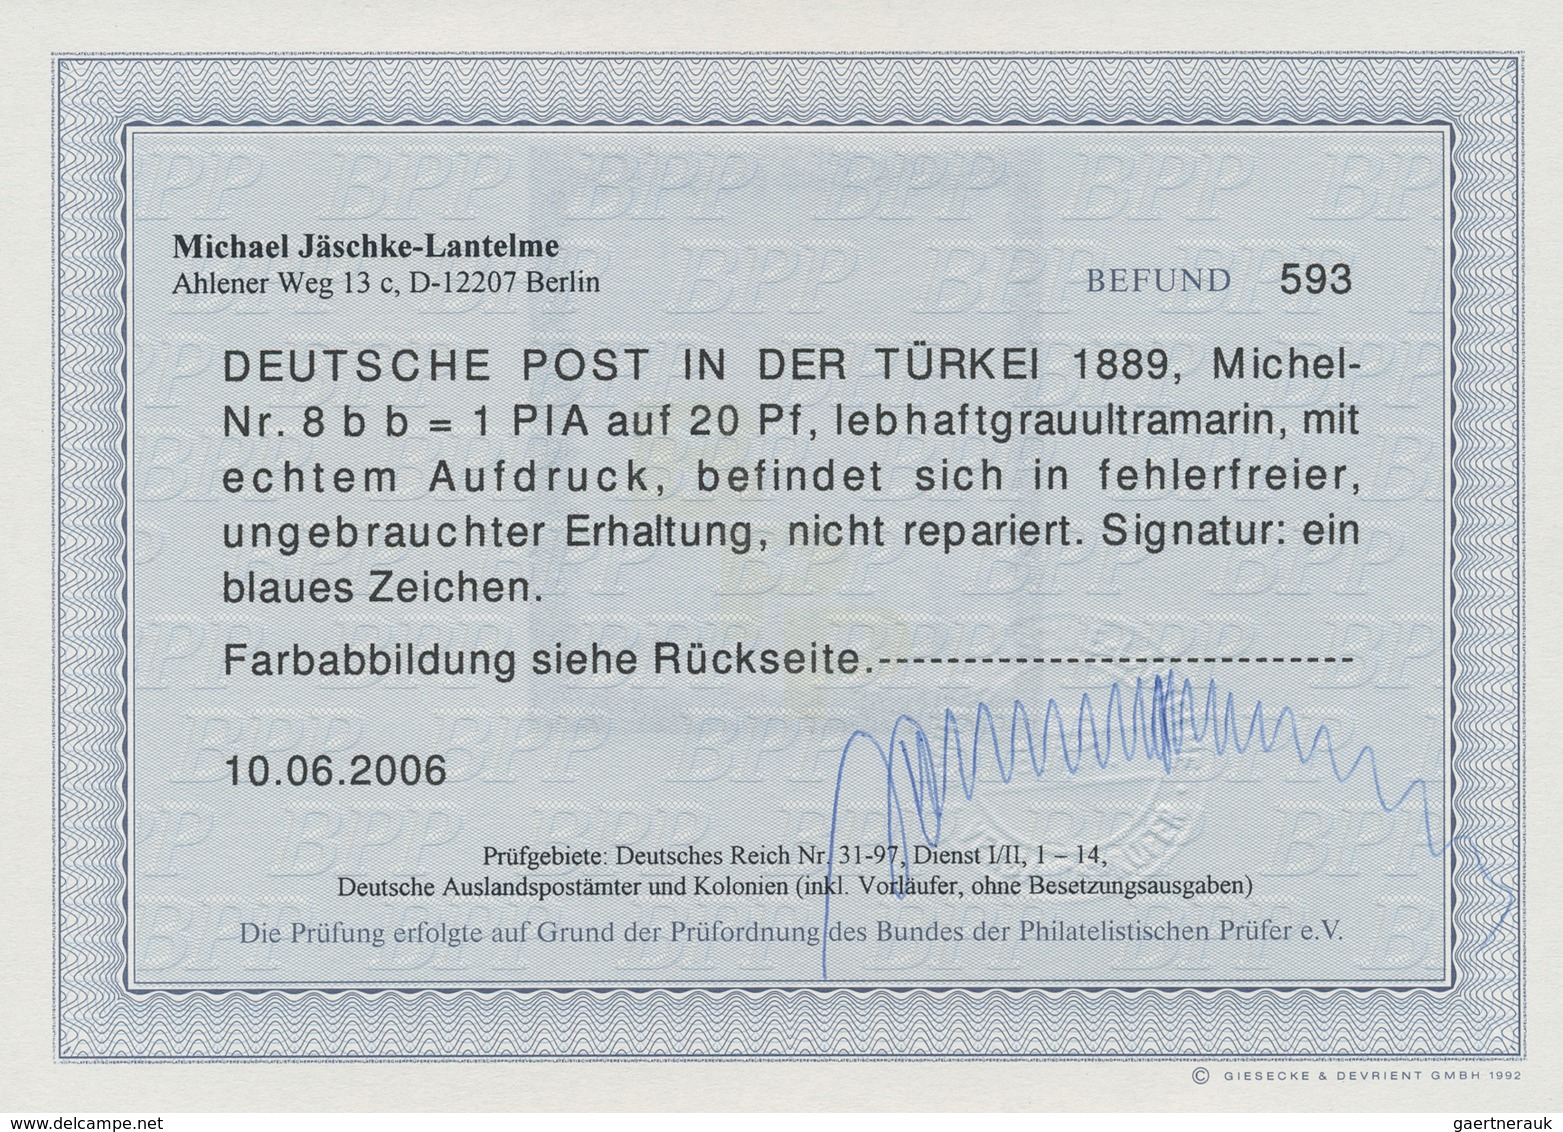 Deutsche Post In Der Türkei: 1889, 1 Pia Auf 20 Pf Lebhaftgrauultramarin Aufdruckwert Ungebraucht, E - Turkey (offices)